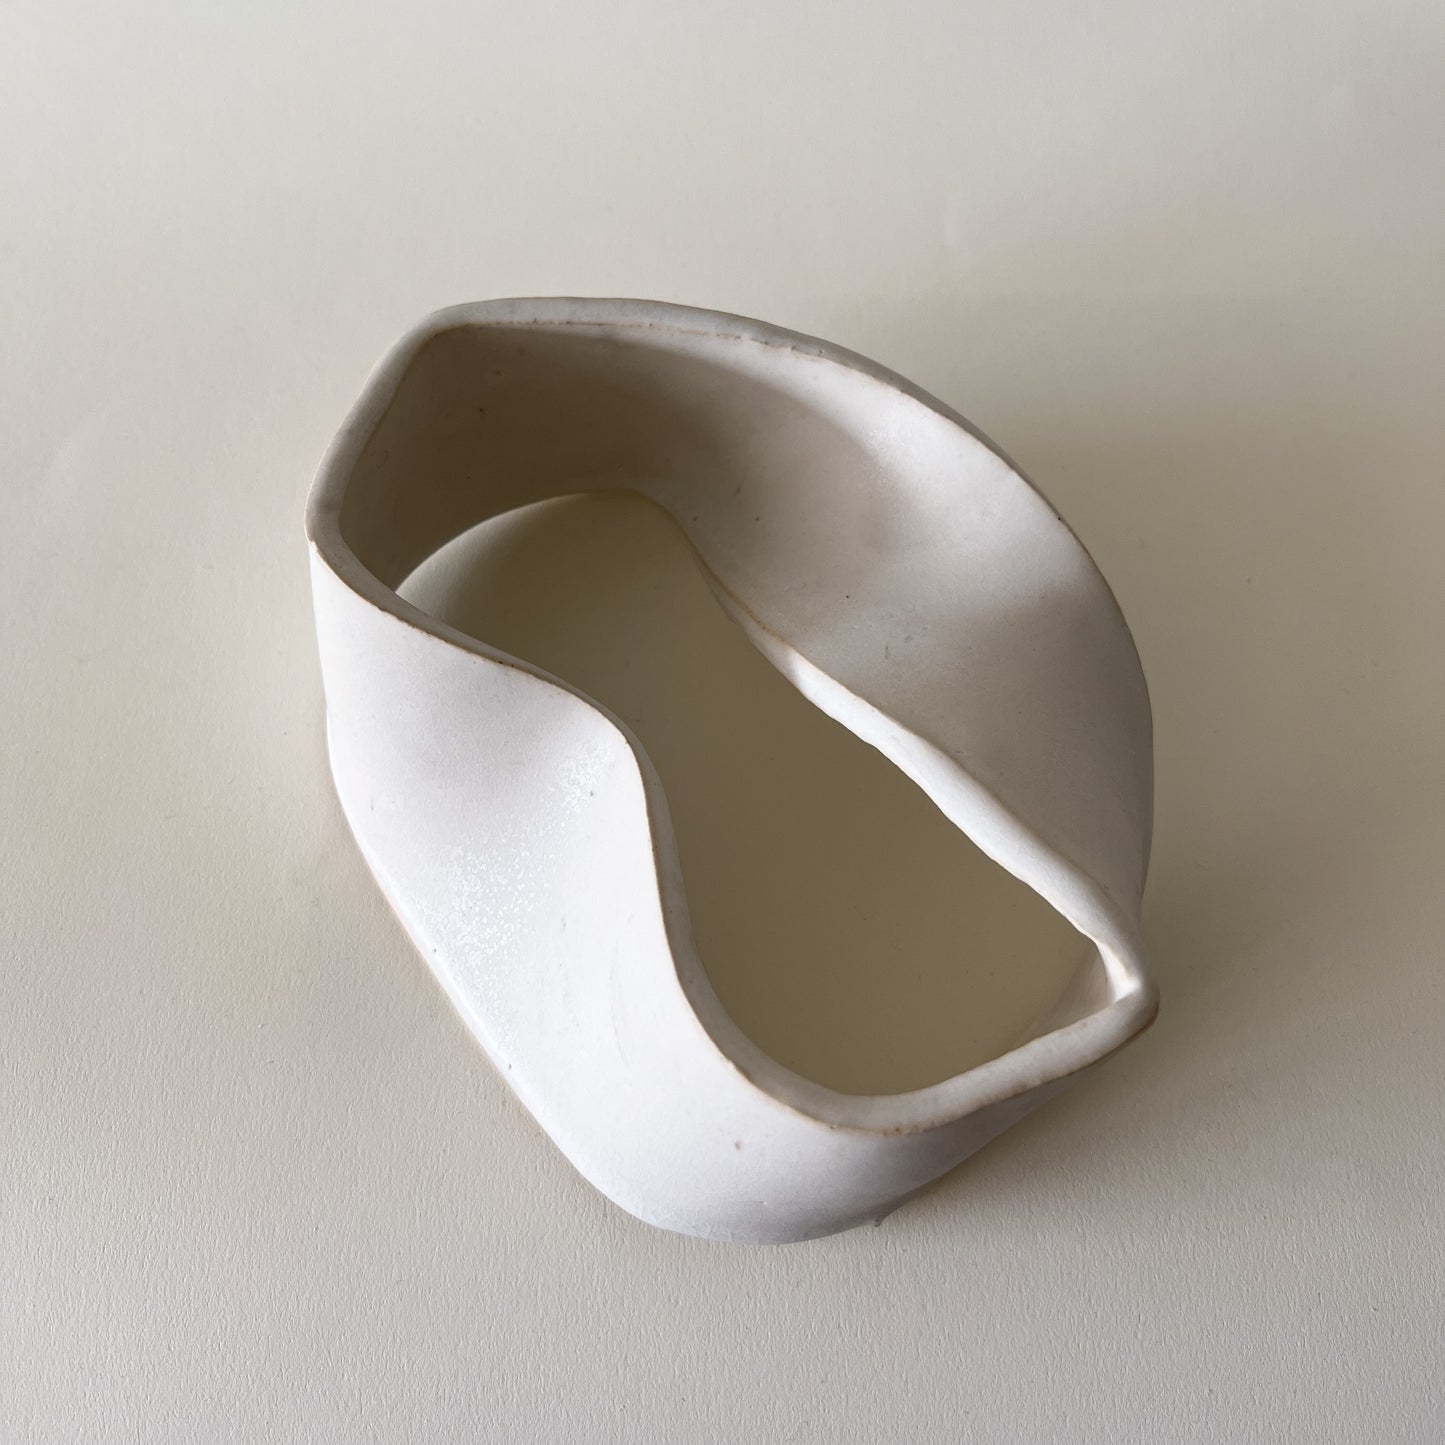 Möbius no. 1 Sculpture